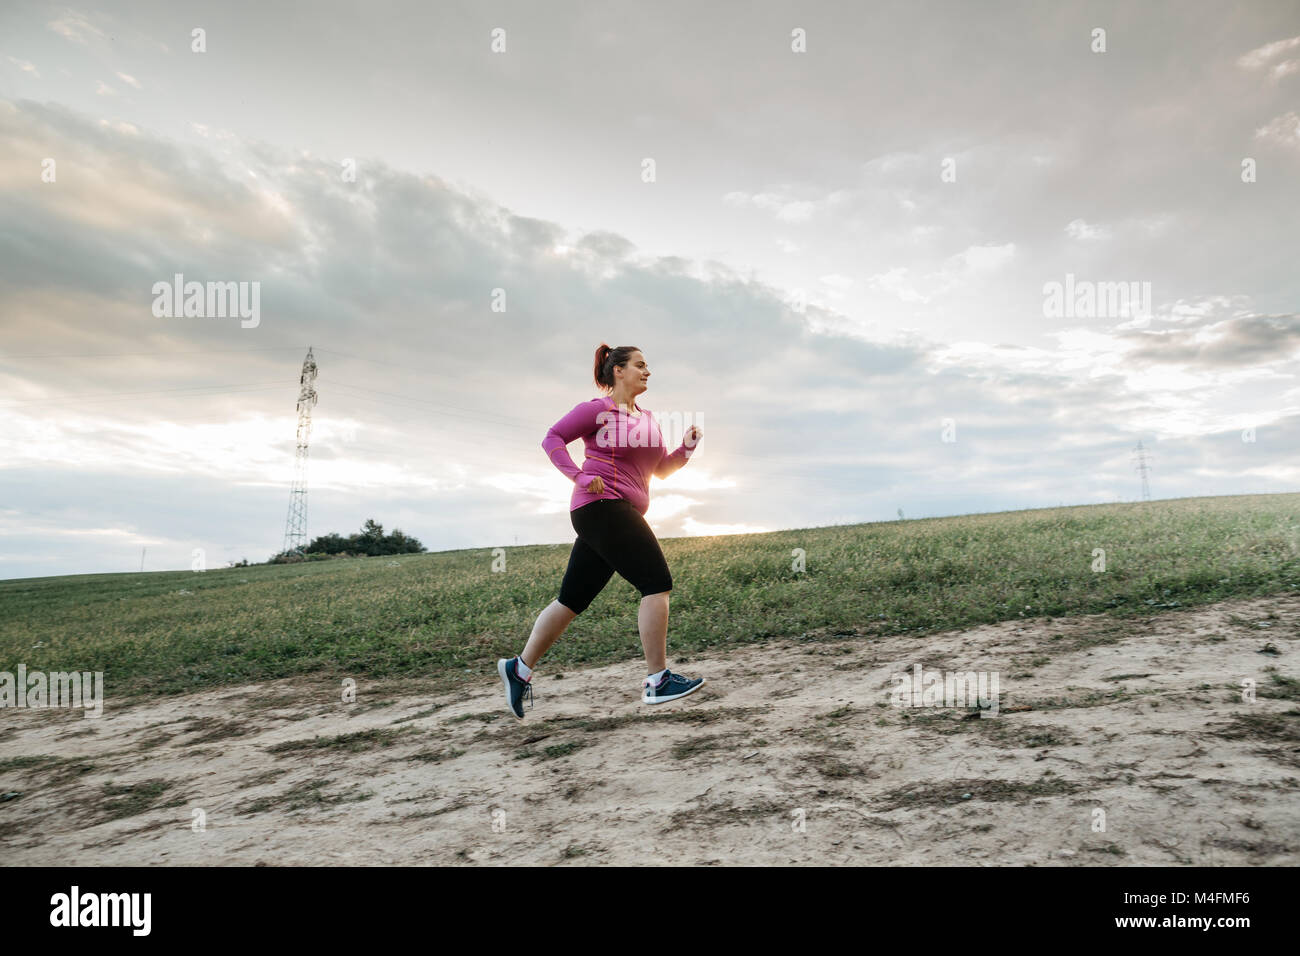 Basso angolo di visione di un paffuto pareggiatore femmina jogging fino alla cima di una collina al tramonto. Foto Stock